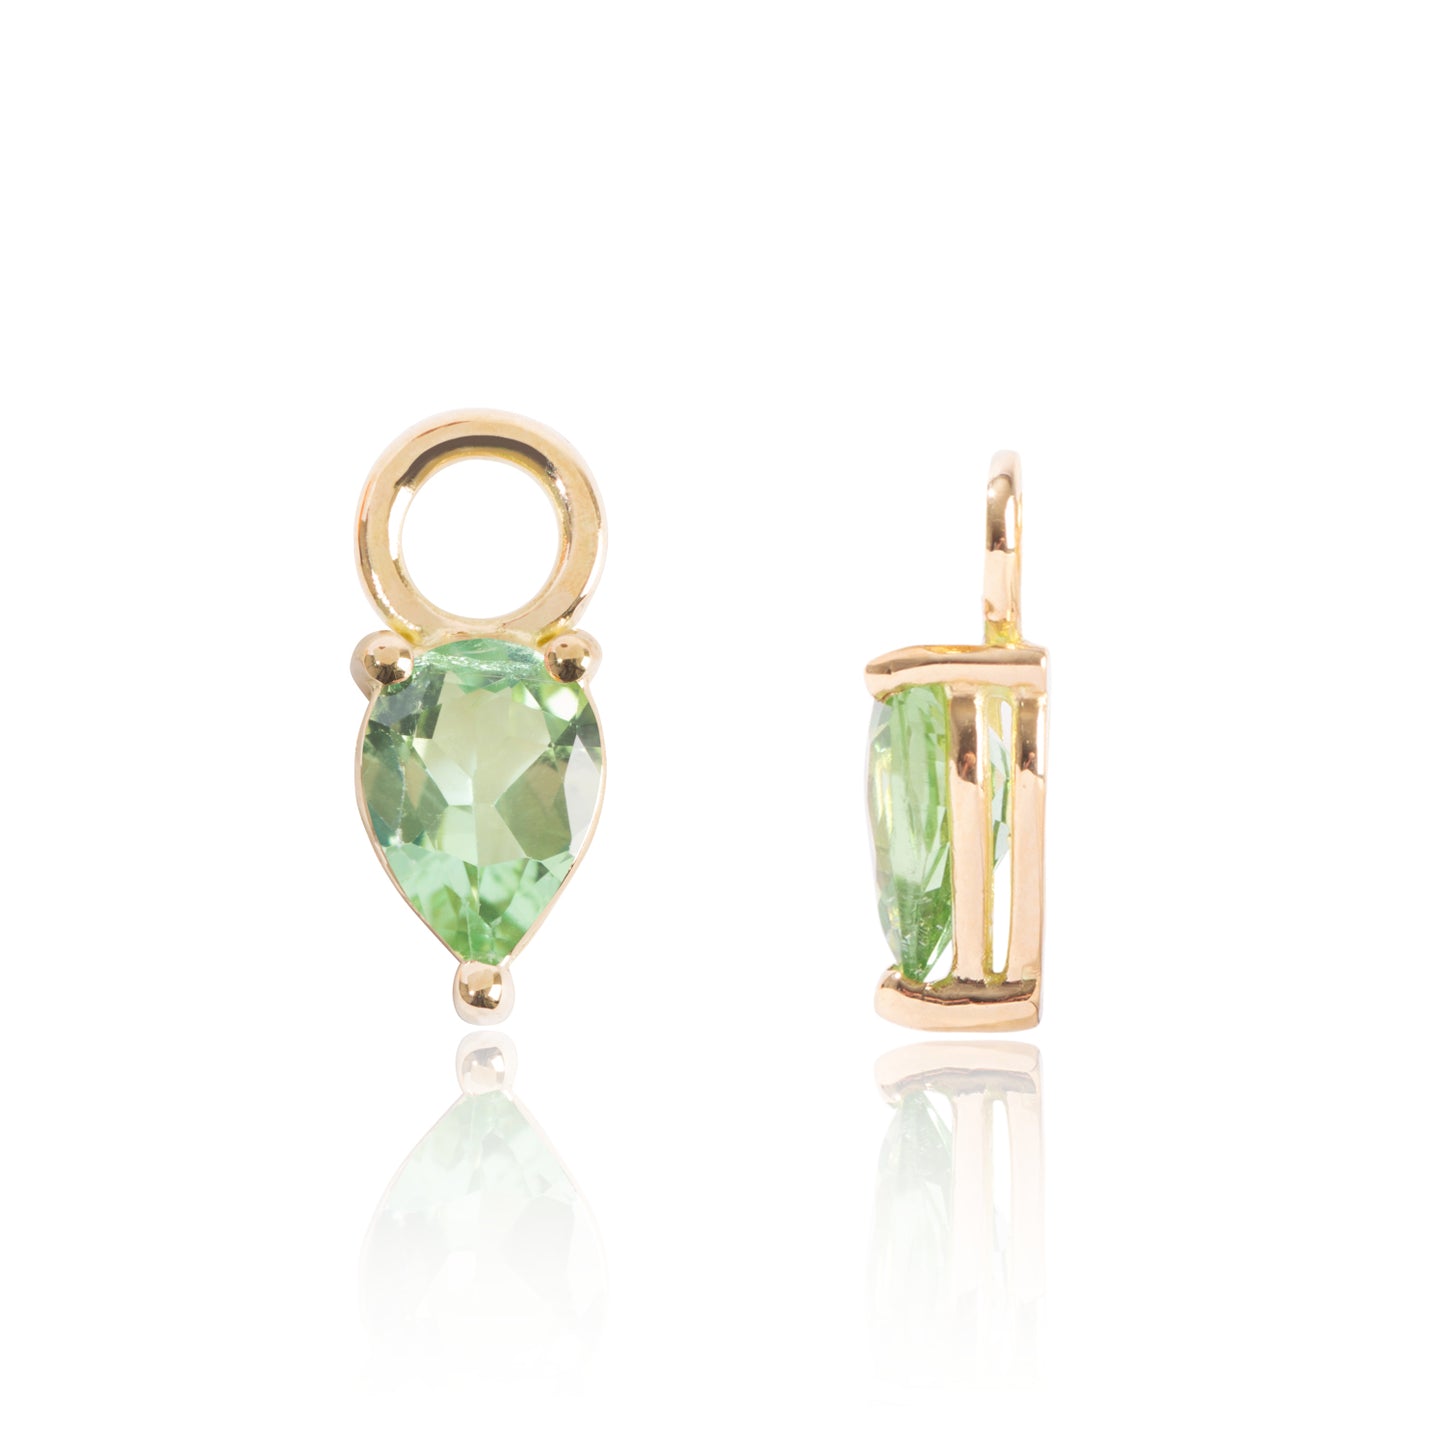 Light Green Tourmaline Earring Pendants Side View by McFarlane Fine Jewellery